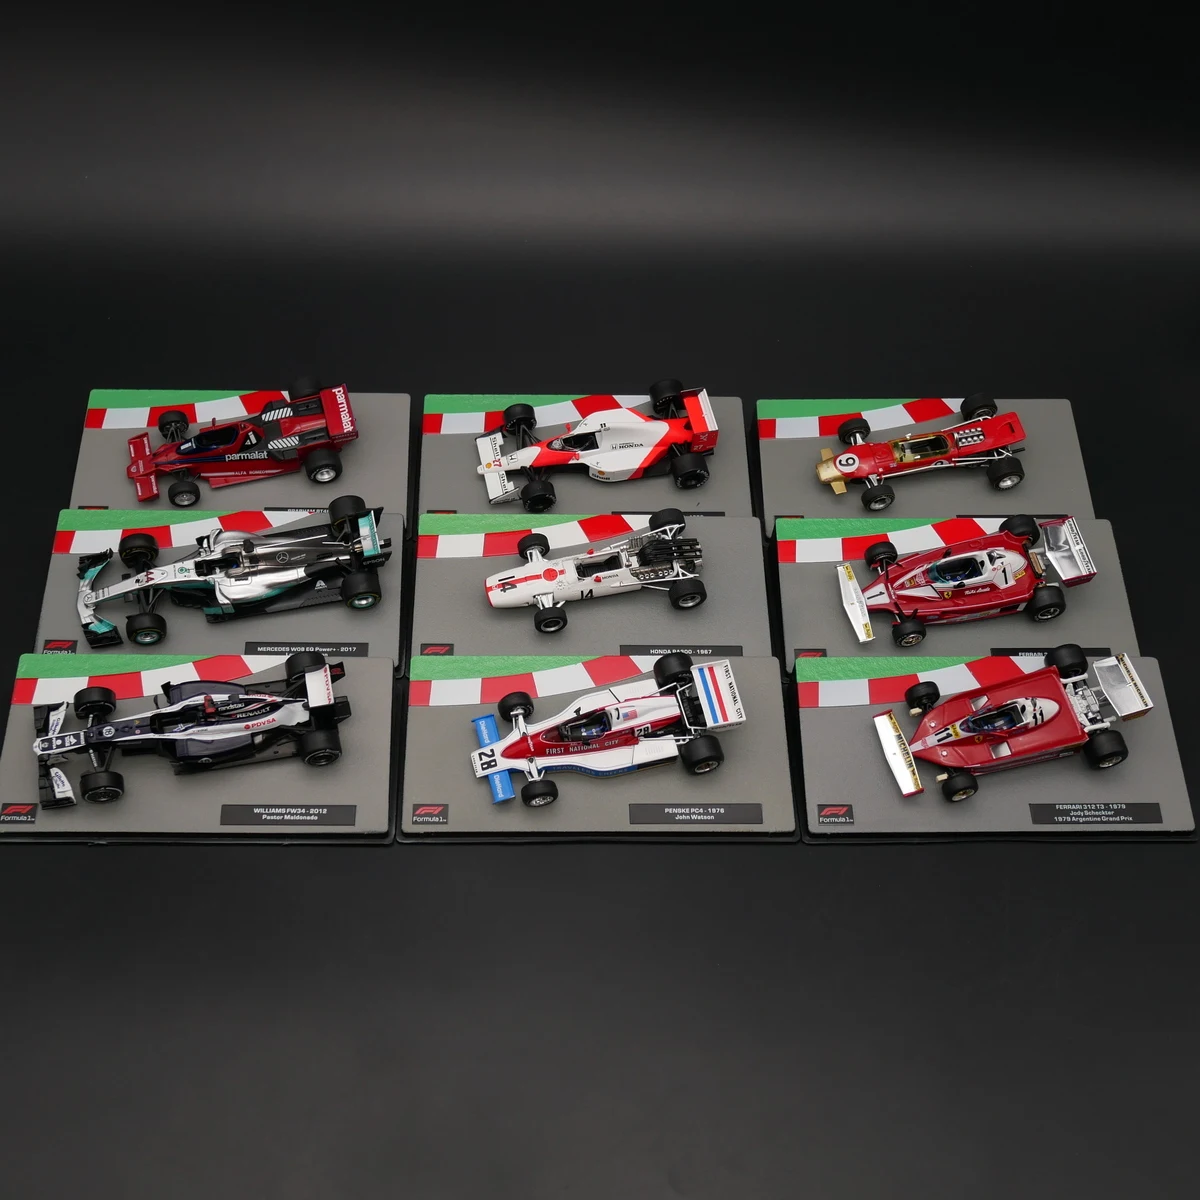 Модель гоночного автомобиля ixo 1: 1 F1, модель автомобиля BENZ с легированным сплавом, коллекционная декоративная подарочная игрушка